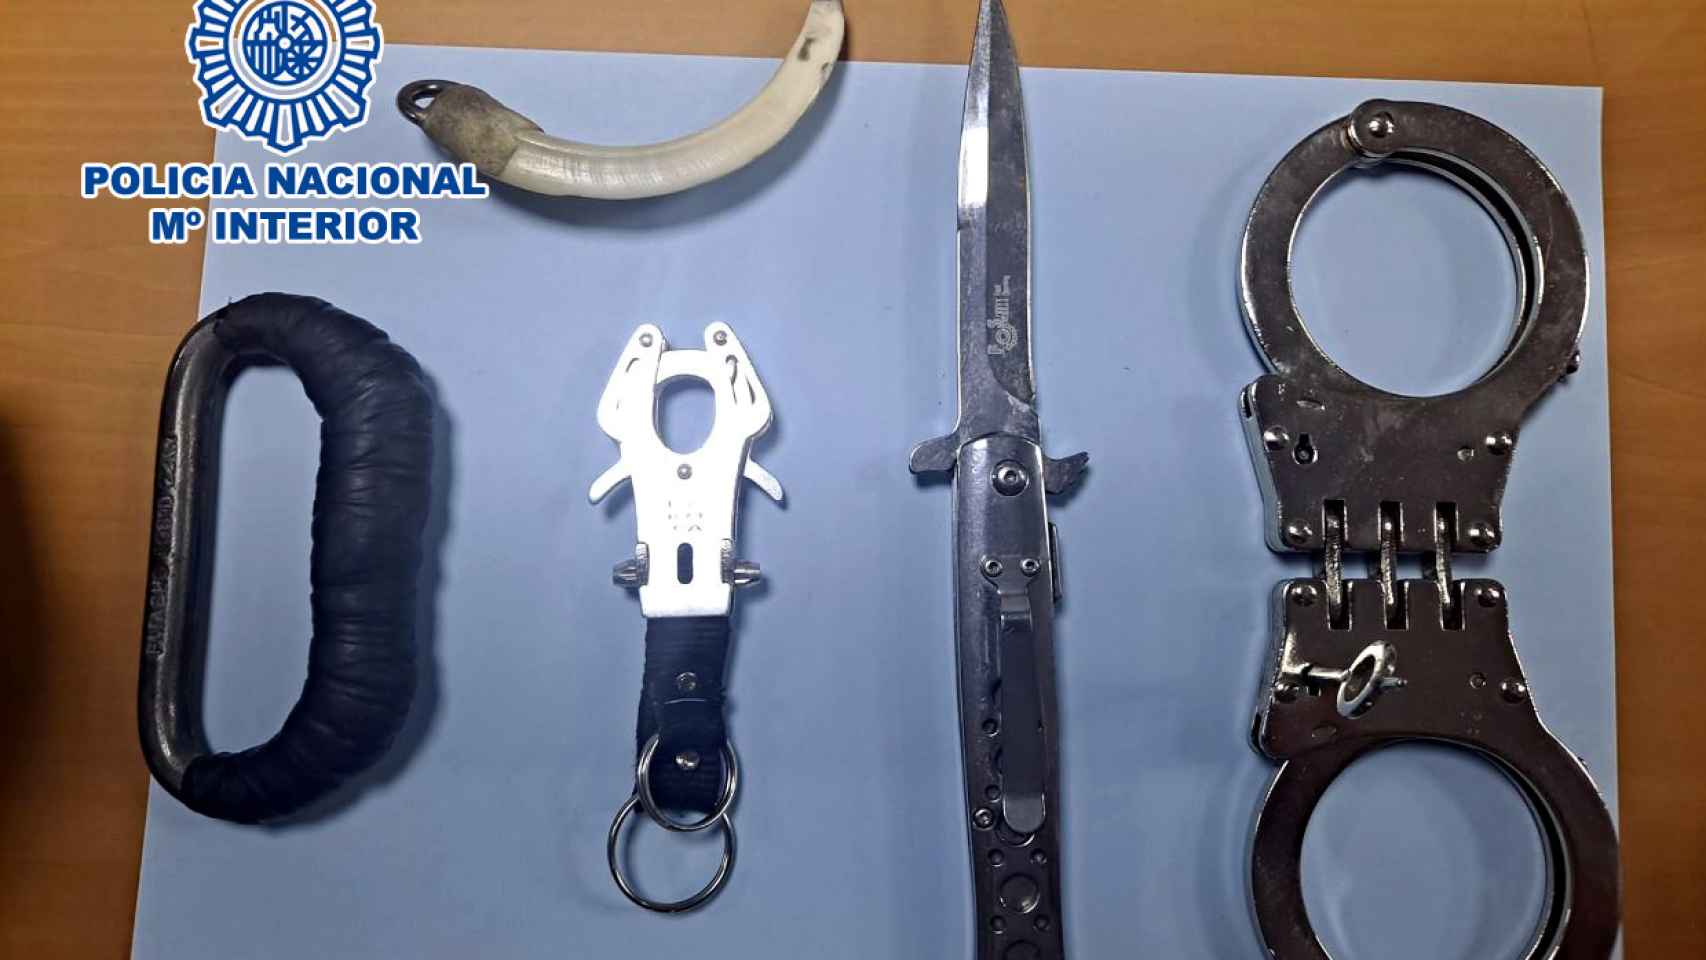 Estas son las armas intervenidas por la Policía Nacional al portero del local del Puerto de Alicante.